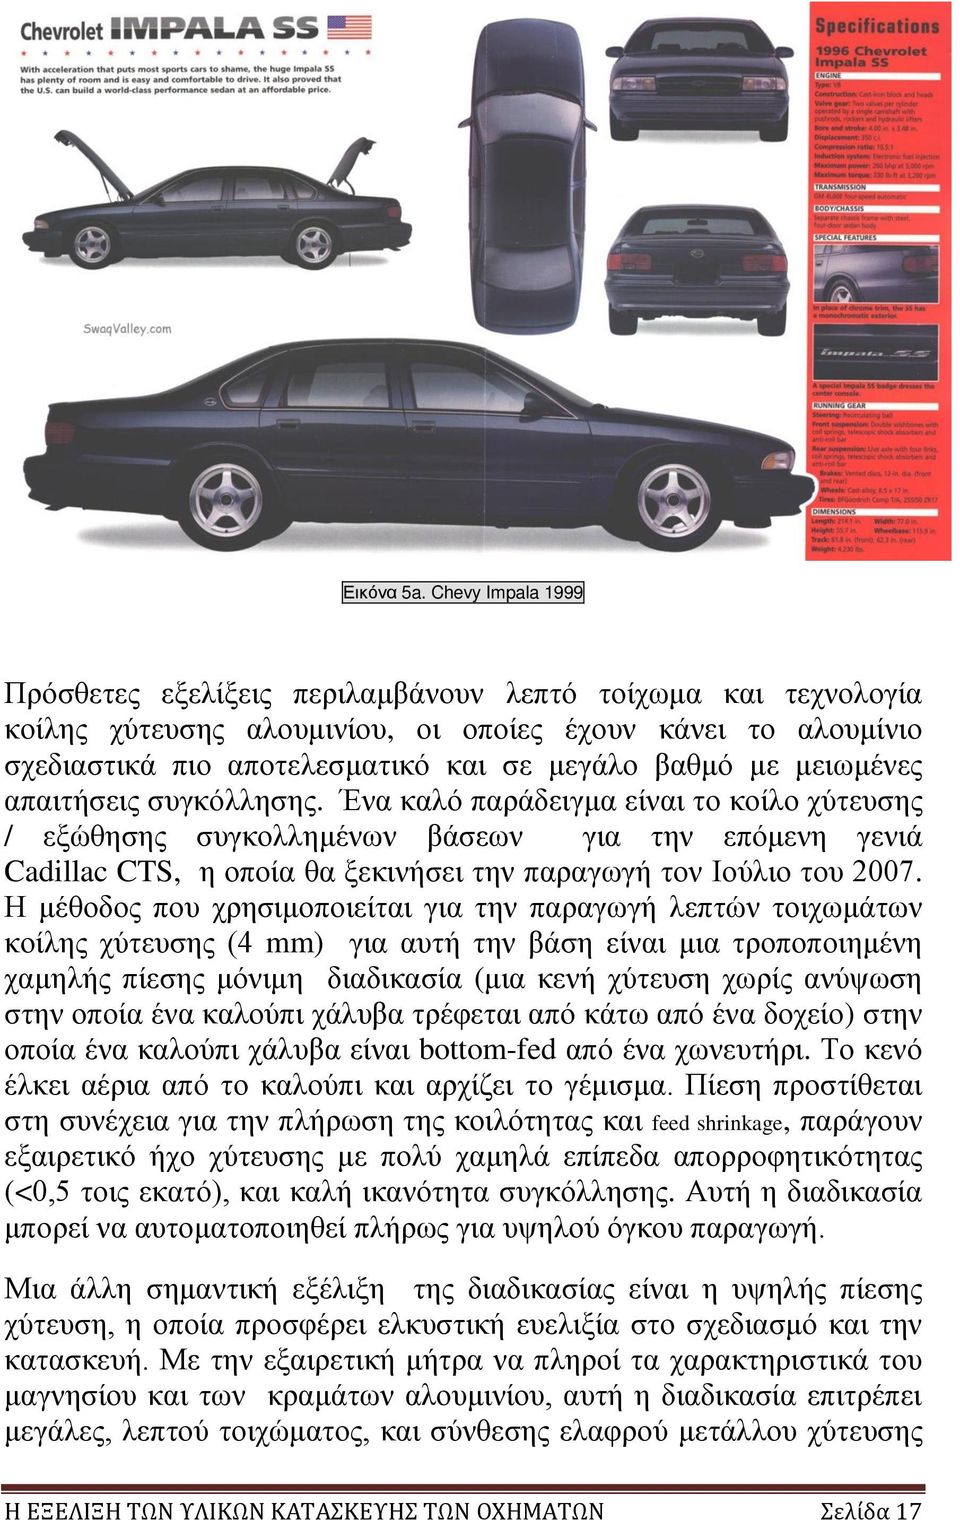 μειωμένες απαιτήσεις συγκόλλησης. Ένα καλό παράδειγμα είναι το κοίλο χύτευσης / εξώθησης συγκολλημένων βάσεων για την επόμενη γενιά Cadillac CTS, η οποία θα ξεκινήσει την παραγωγή τον Ιούλιο του 2007.